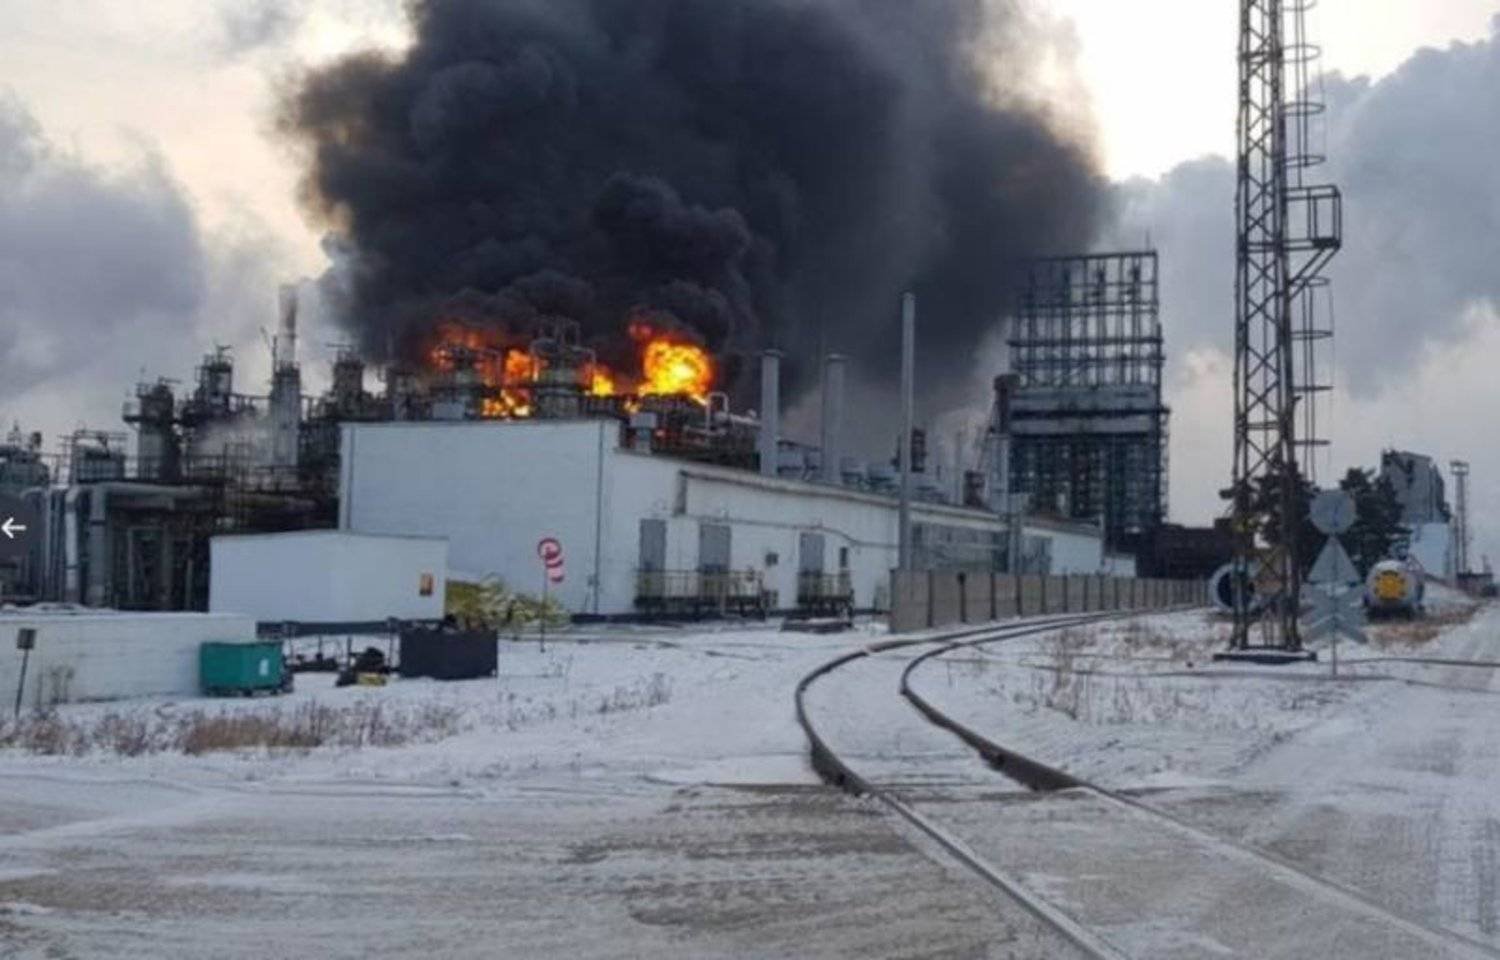 ألسنة الحريق ترتفع بمنشأة لتكرير النفط في روسيا سابقاً (أرشيفية - وسائل إعلام روسية)